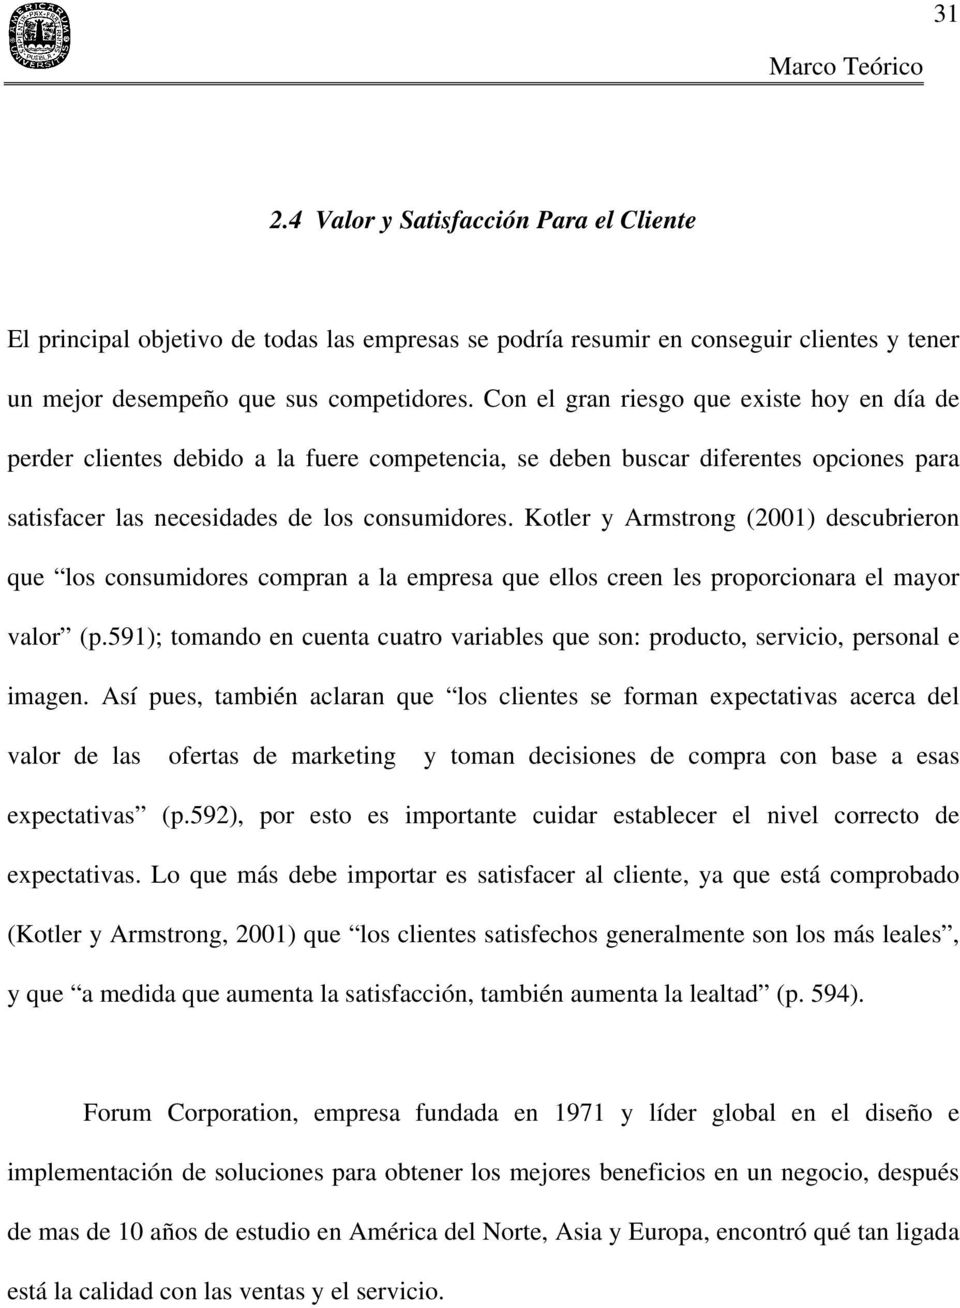 Kotler y Armstrong (2001) descubrieron que los consumidores compran a la empresa que ellos creen les proporcionara el mayor valor (p.